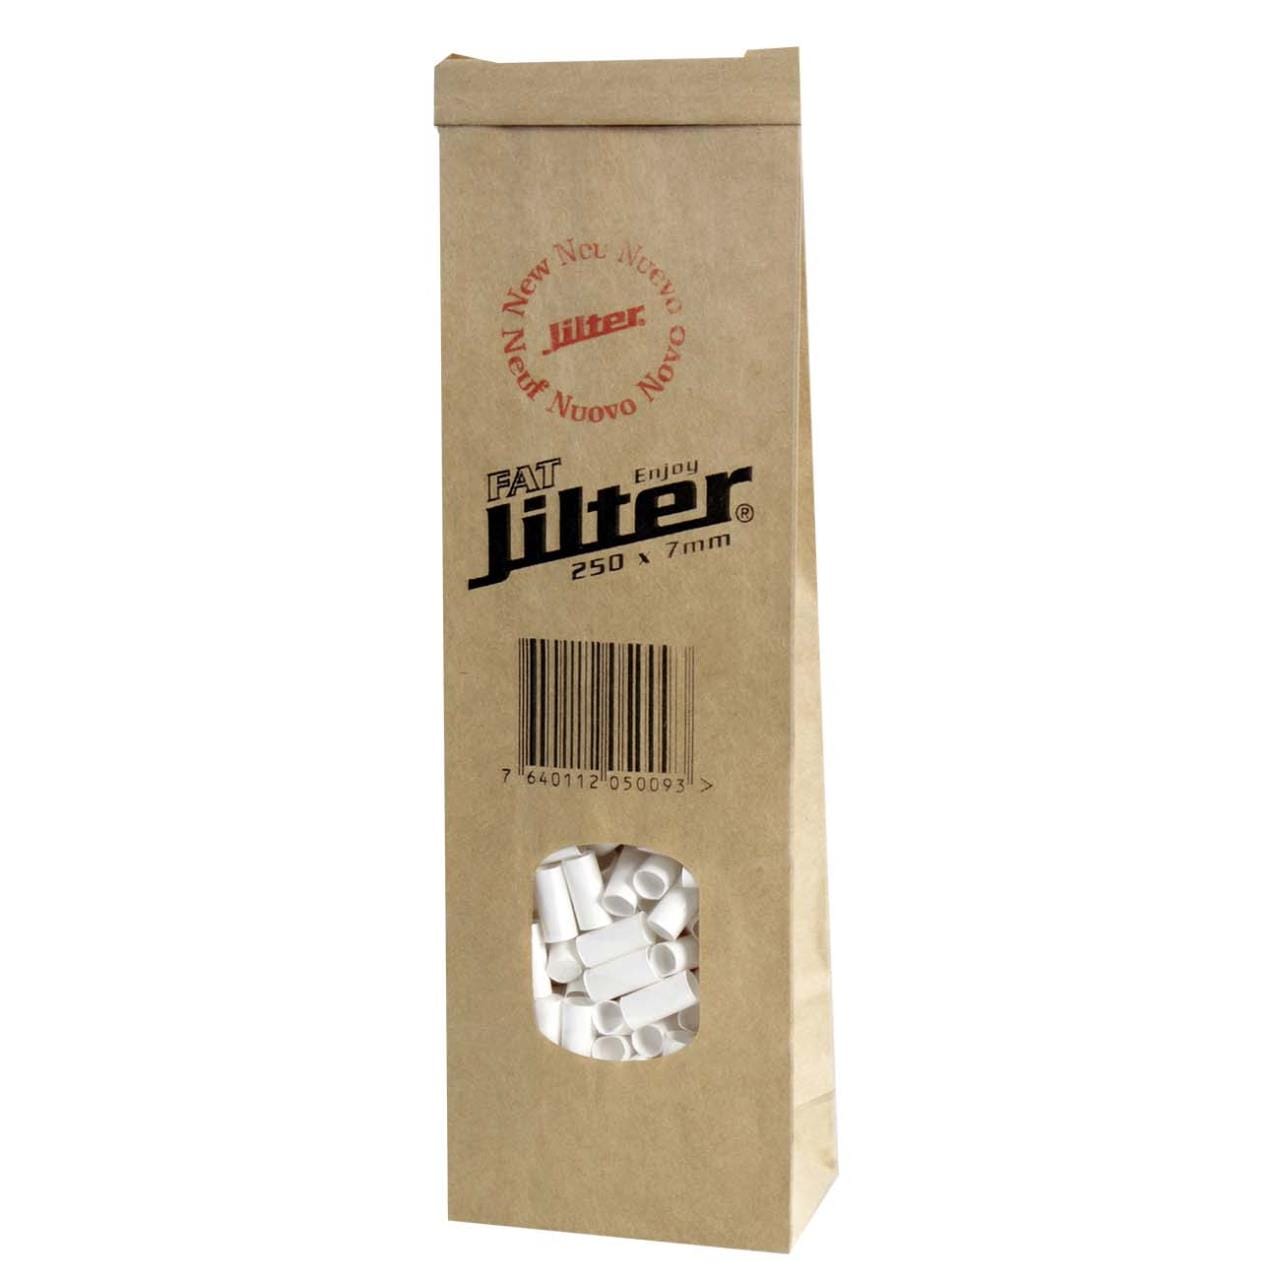 Jilter Filter Fat, Beutel - 250 Stück.